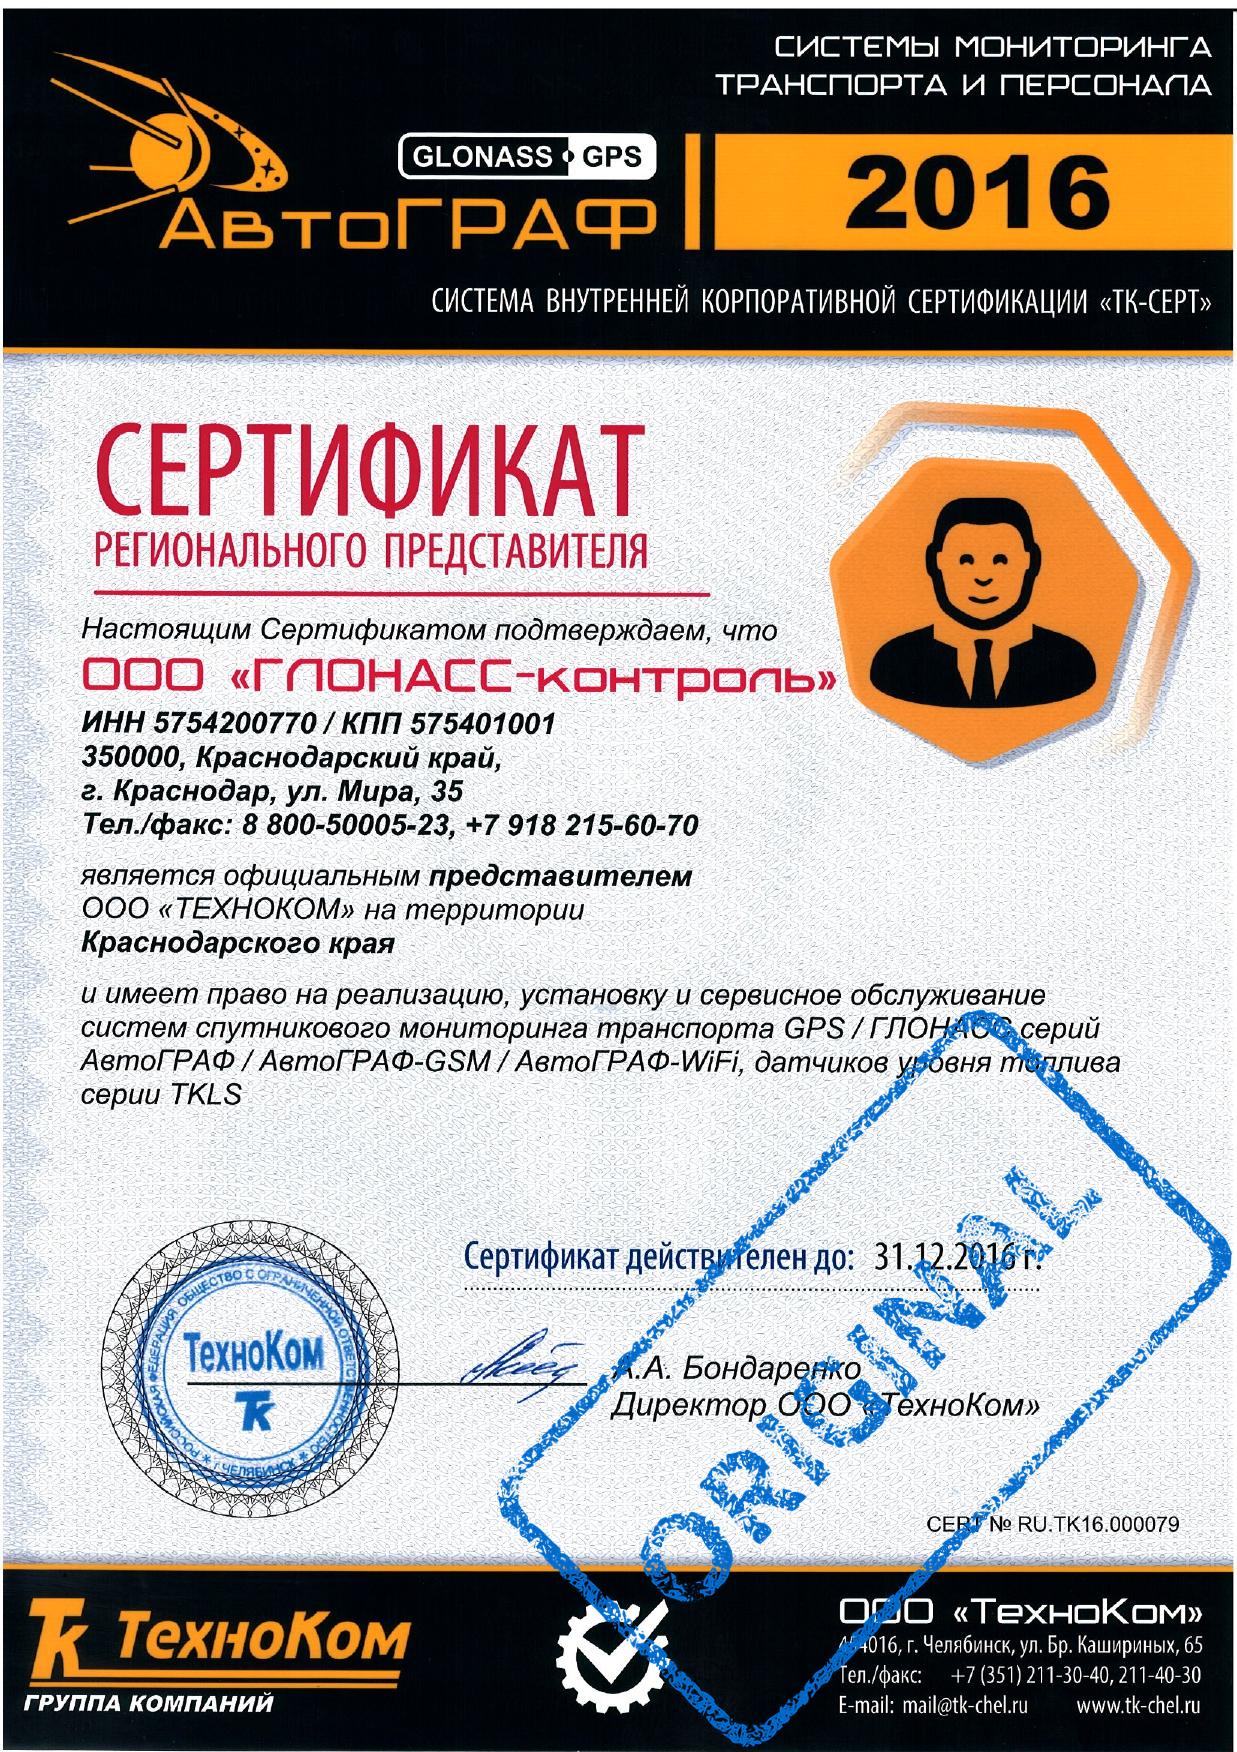 Сертификат представителя